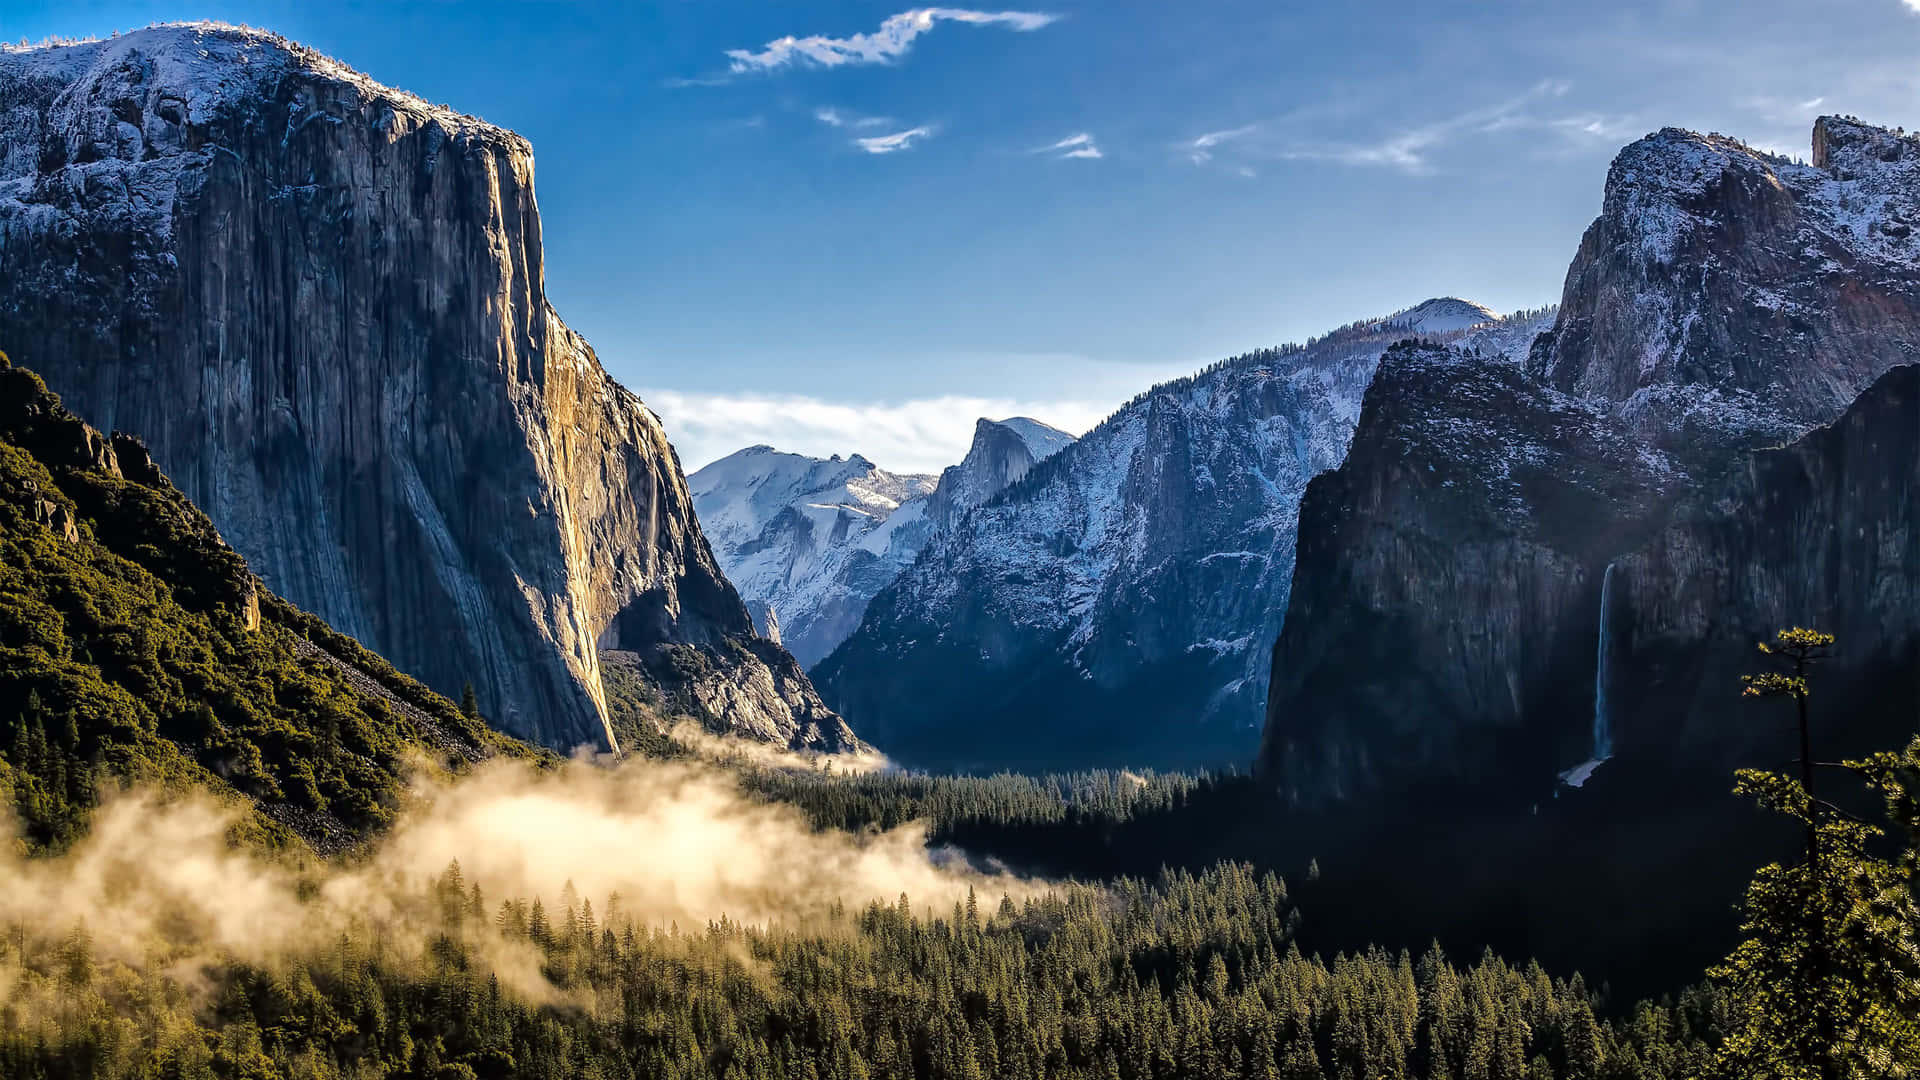 Image  The Grand Wall of El Capitan in California's Yosemite National Park Wallpaper